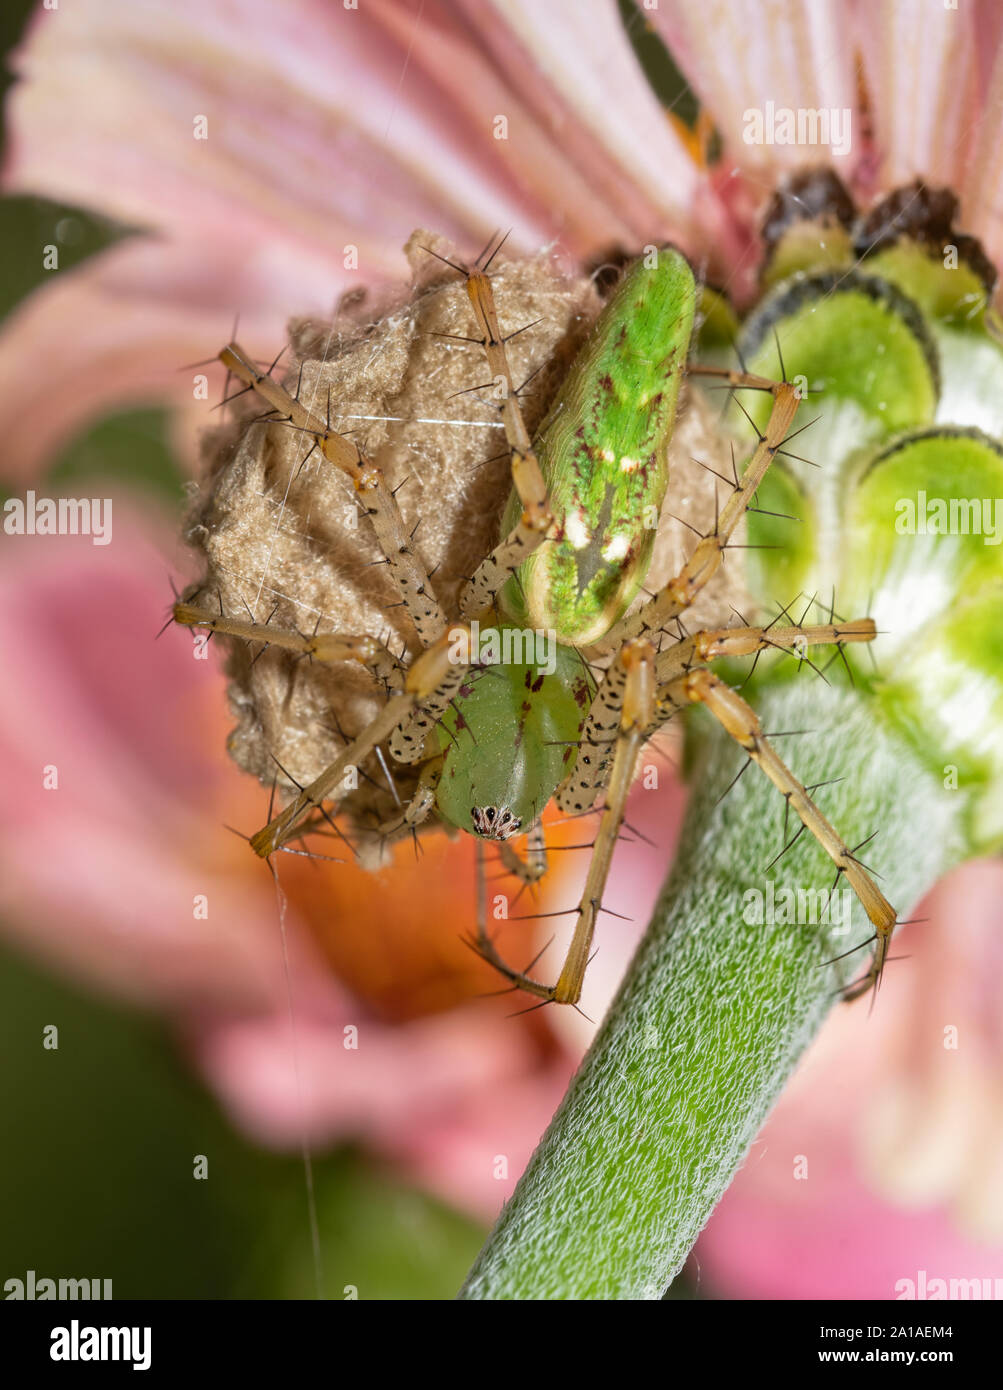 Weibliche Peucetia viridans, Grün Lynx Spider sitzt auf ihrem Ei sac, Schutz, auf der Unterseite eines rosa Zinnia Blume Stockfoto